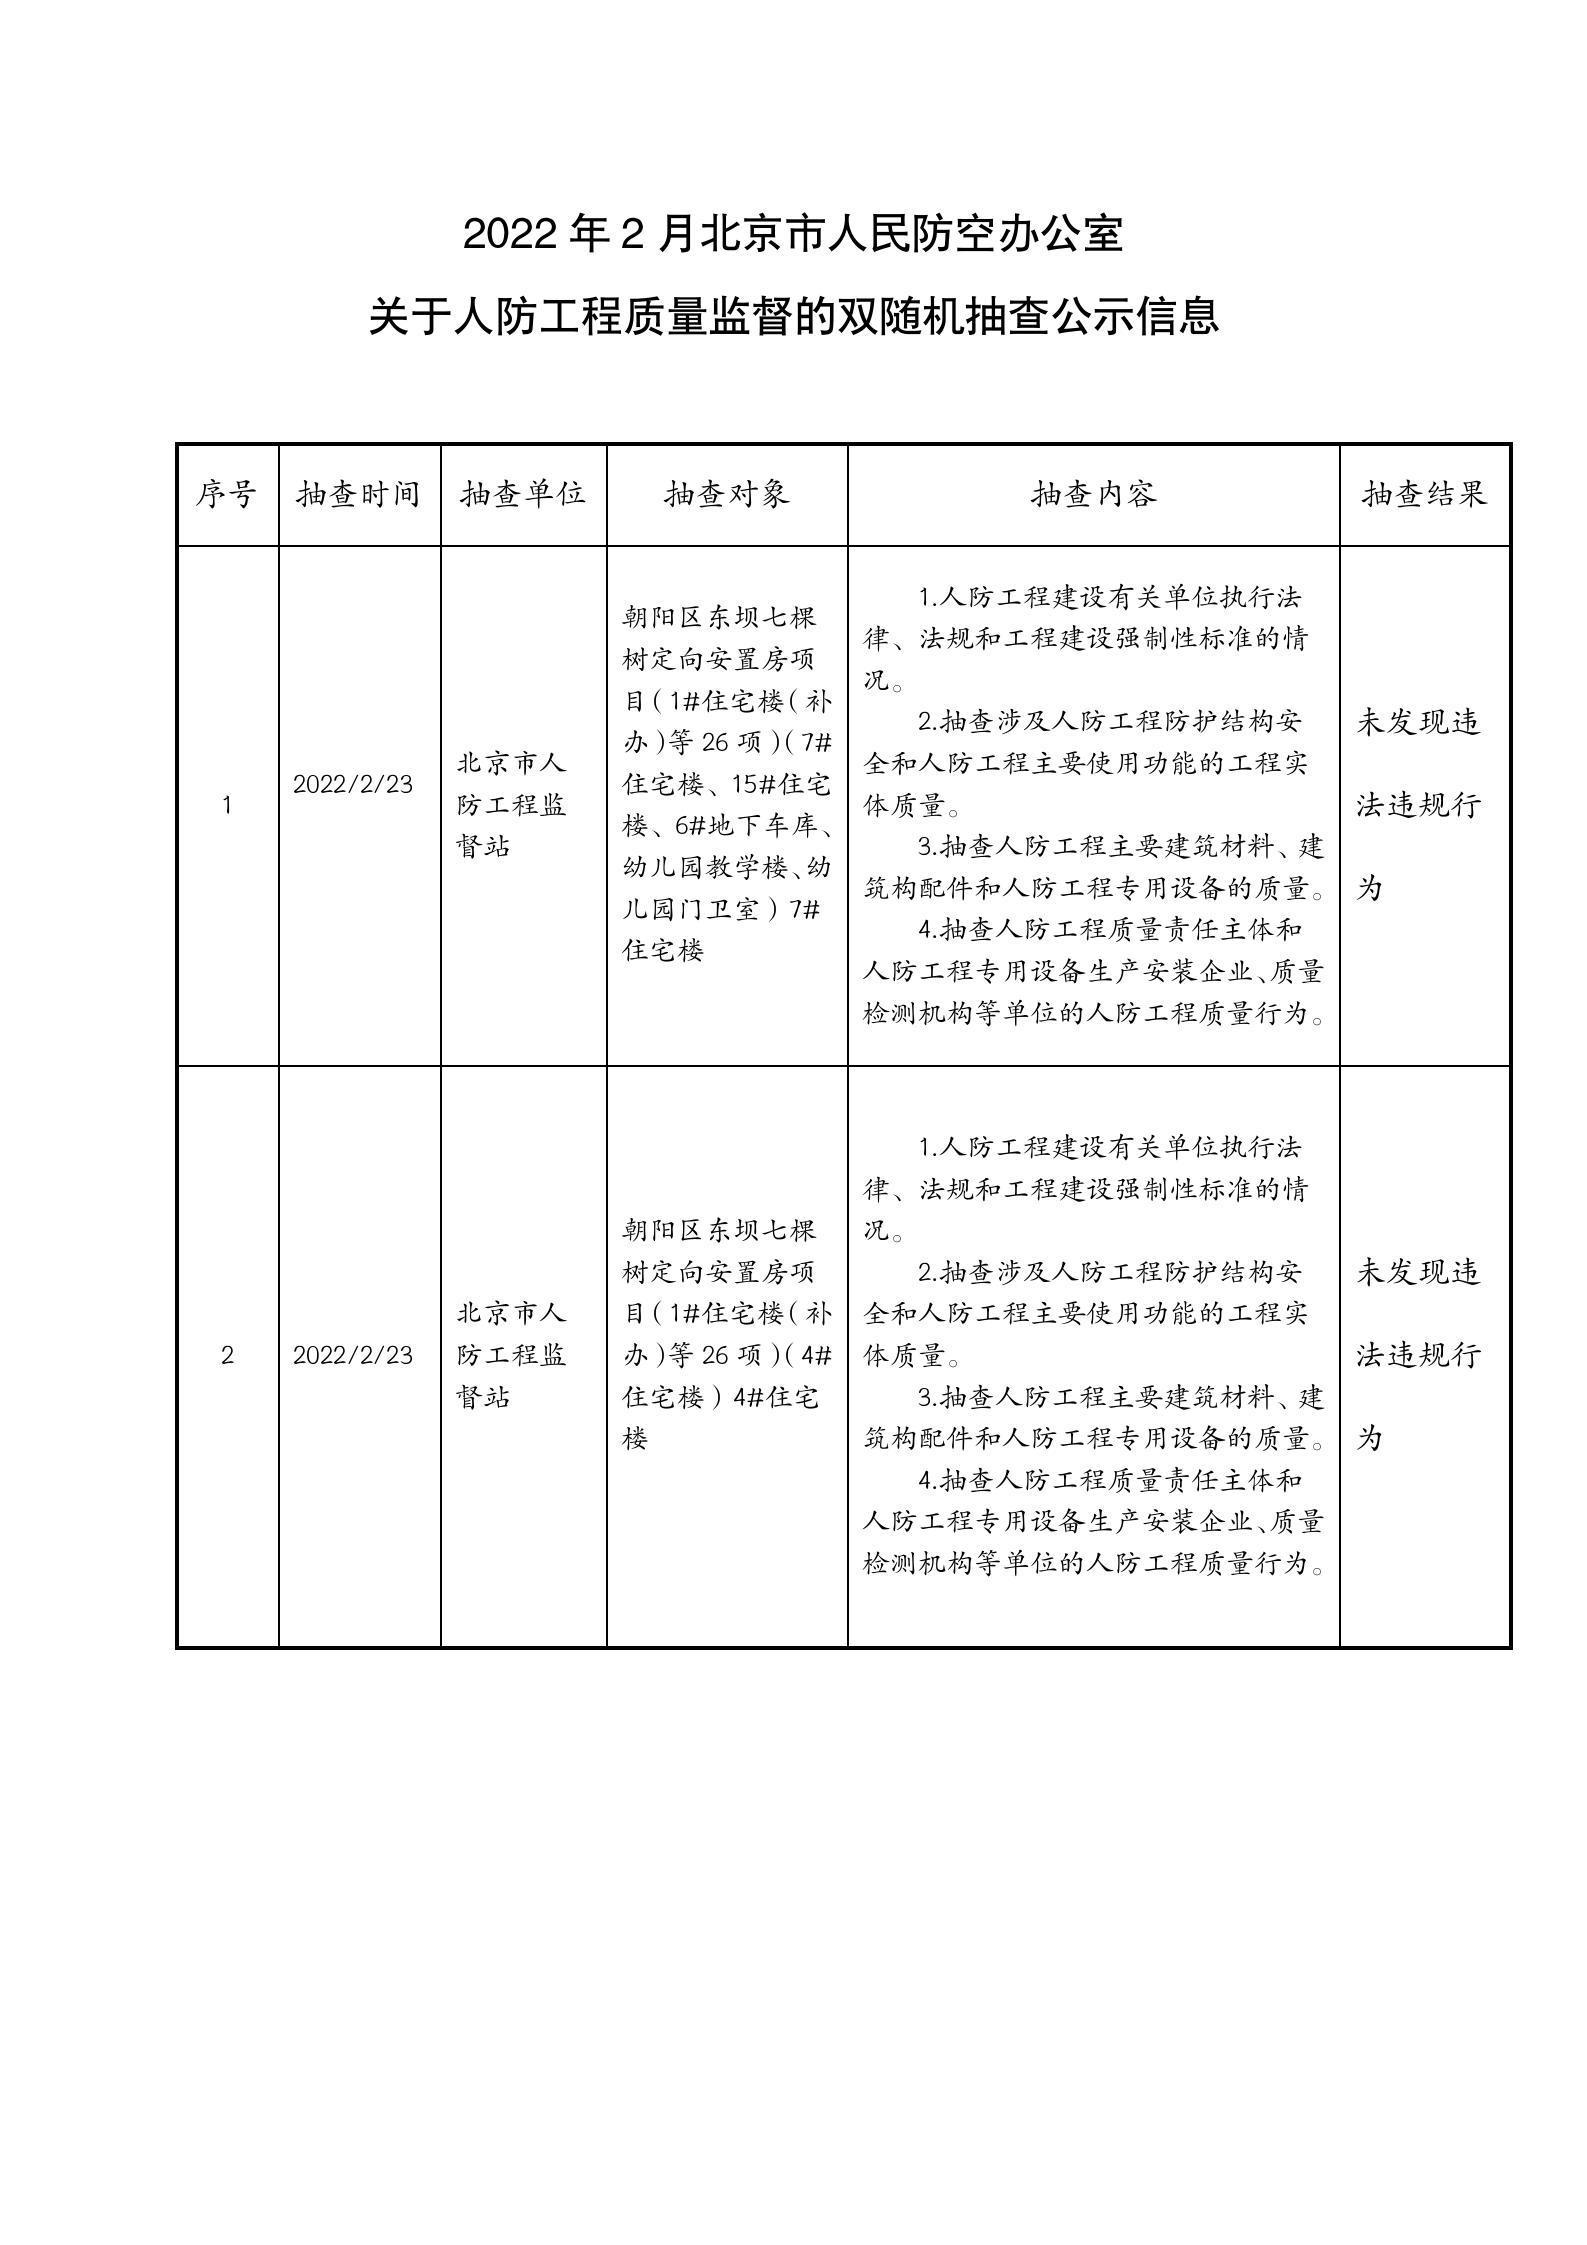 3.7 2022年2月北京市人民防空办公室关于人防工程质量监督的双随机抽查公示信息 2项 _01.jpg